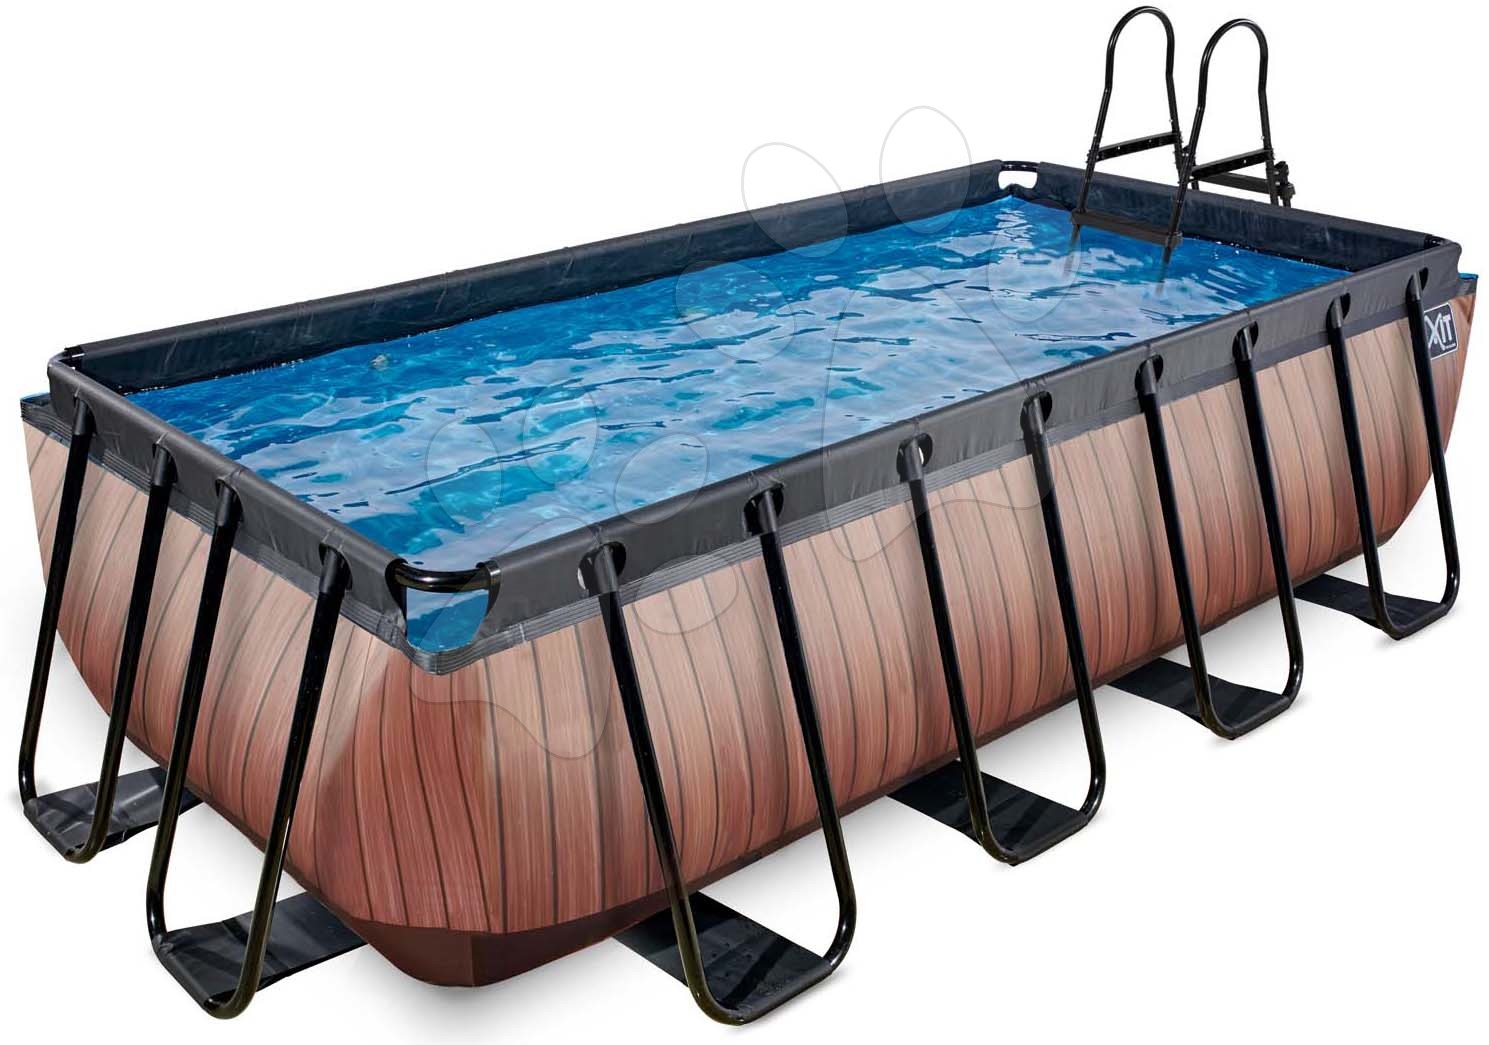 Bazén s pieskovou filtráciou Wood pool Exit Toys oceľová konštrukcia 400*200*100 cm hnedý od 6 rokov